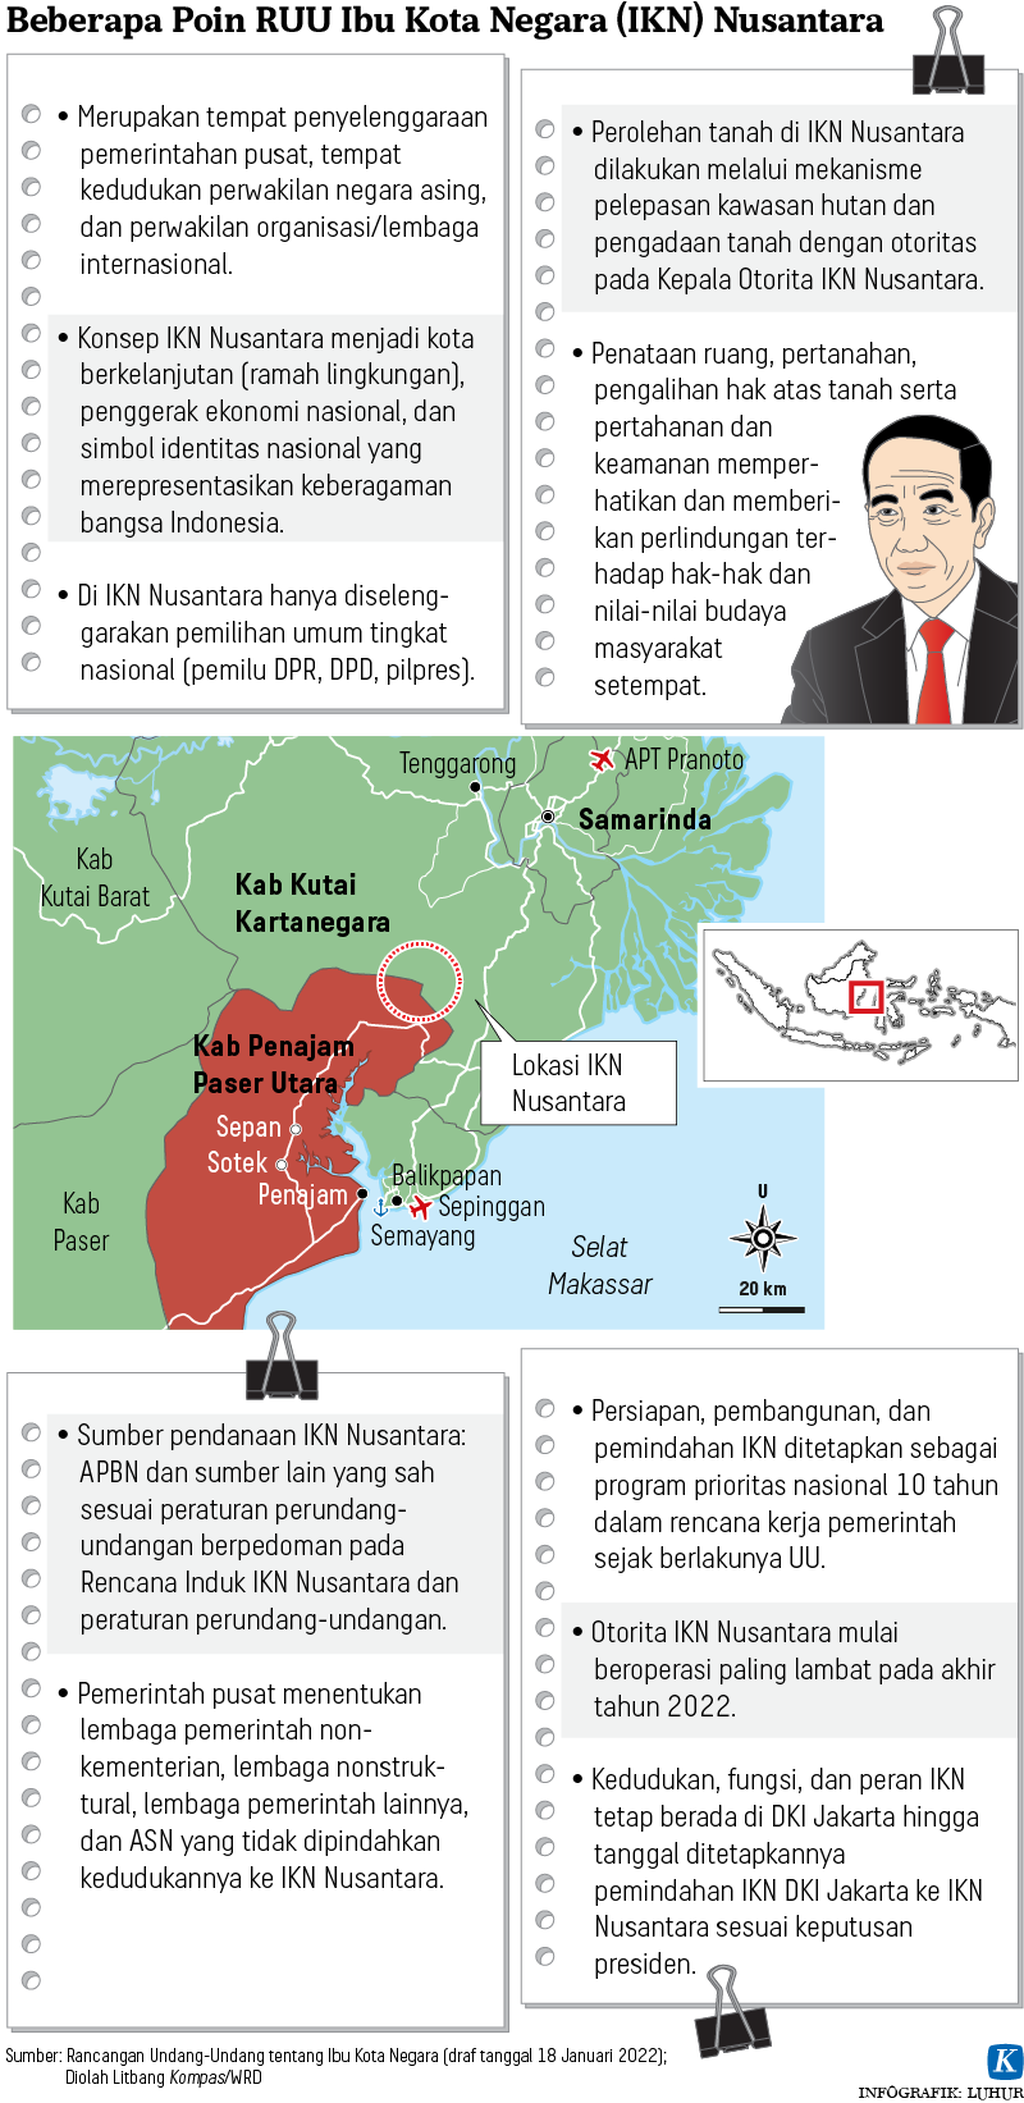 Beberapa Poin RUU Ibu Kota Negara (IKN) Nusantara